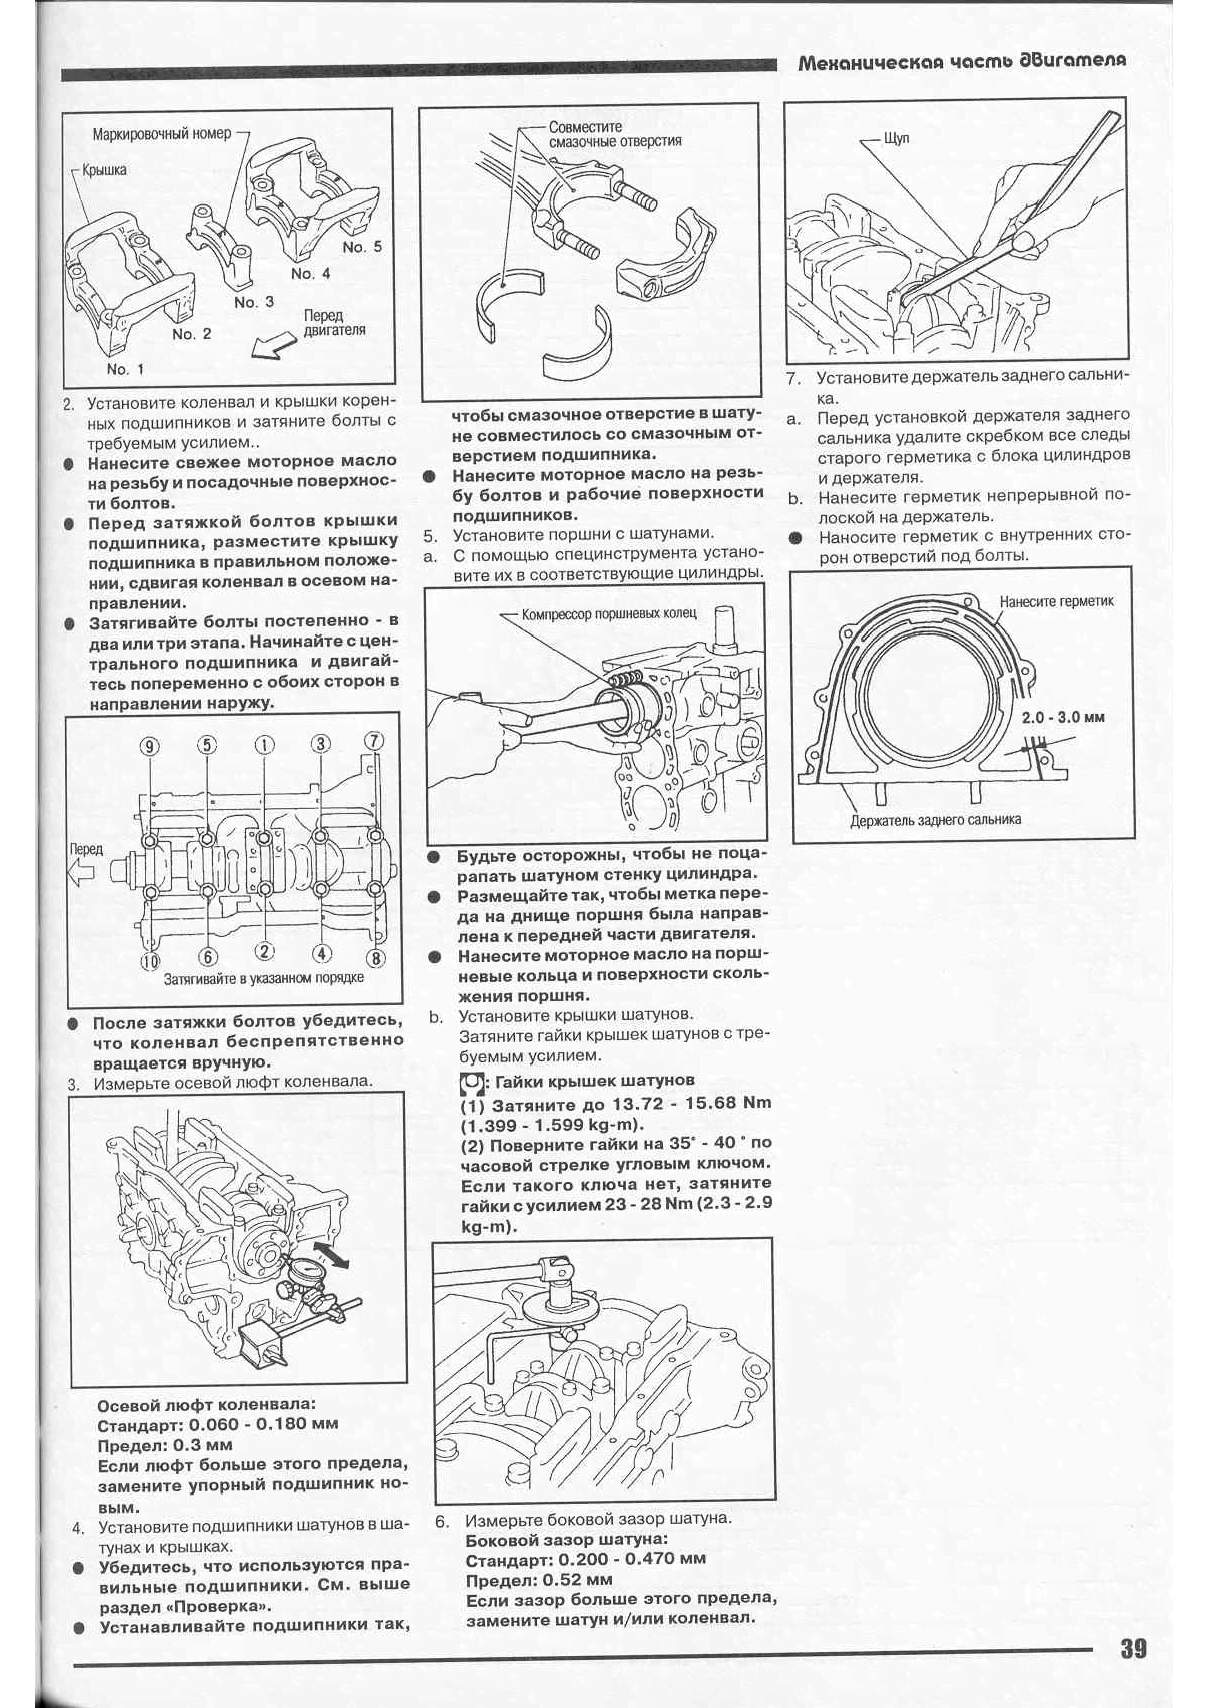 Ниссан санни 1994 технические характеристики – информационный сайт